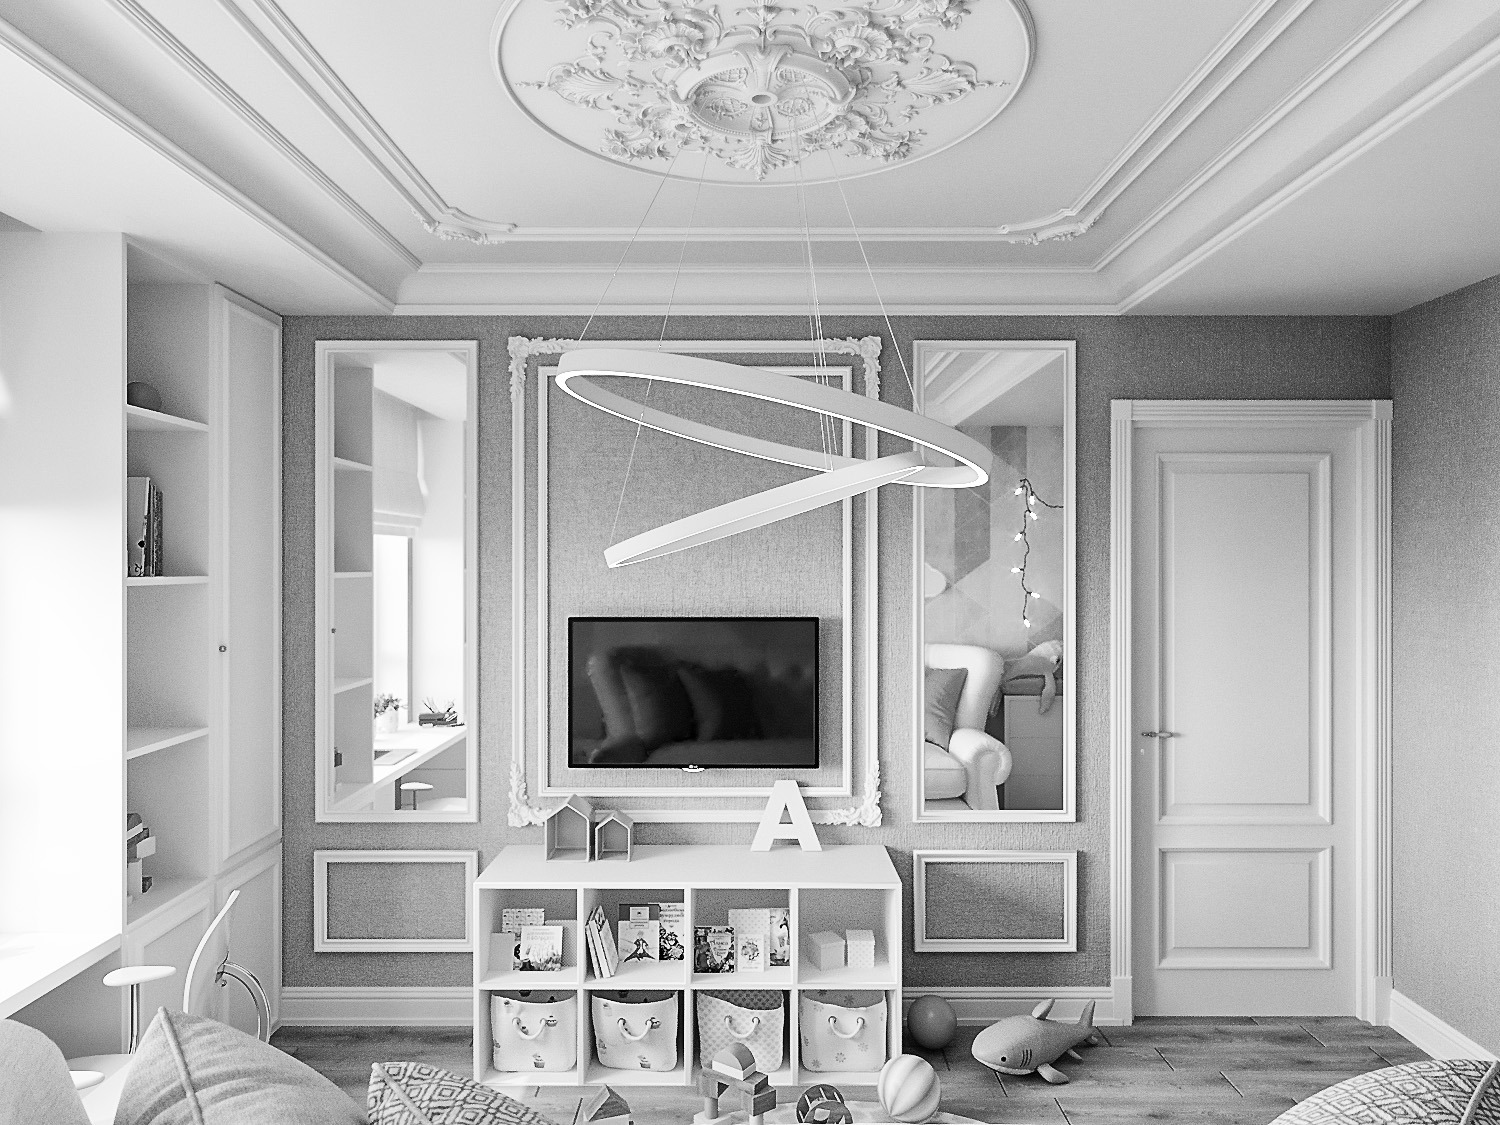 Chambre d'enfant pour une petite fille dans 3d max corona render image